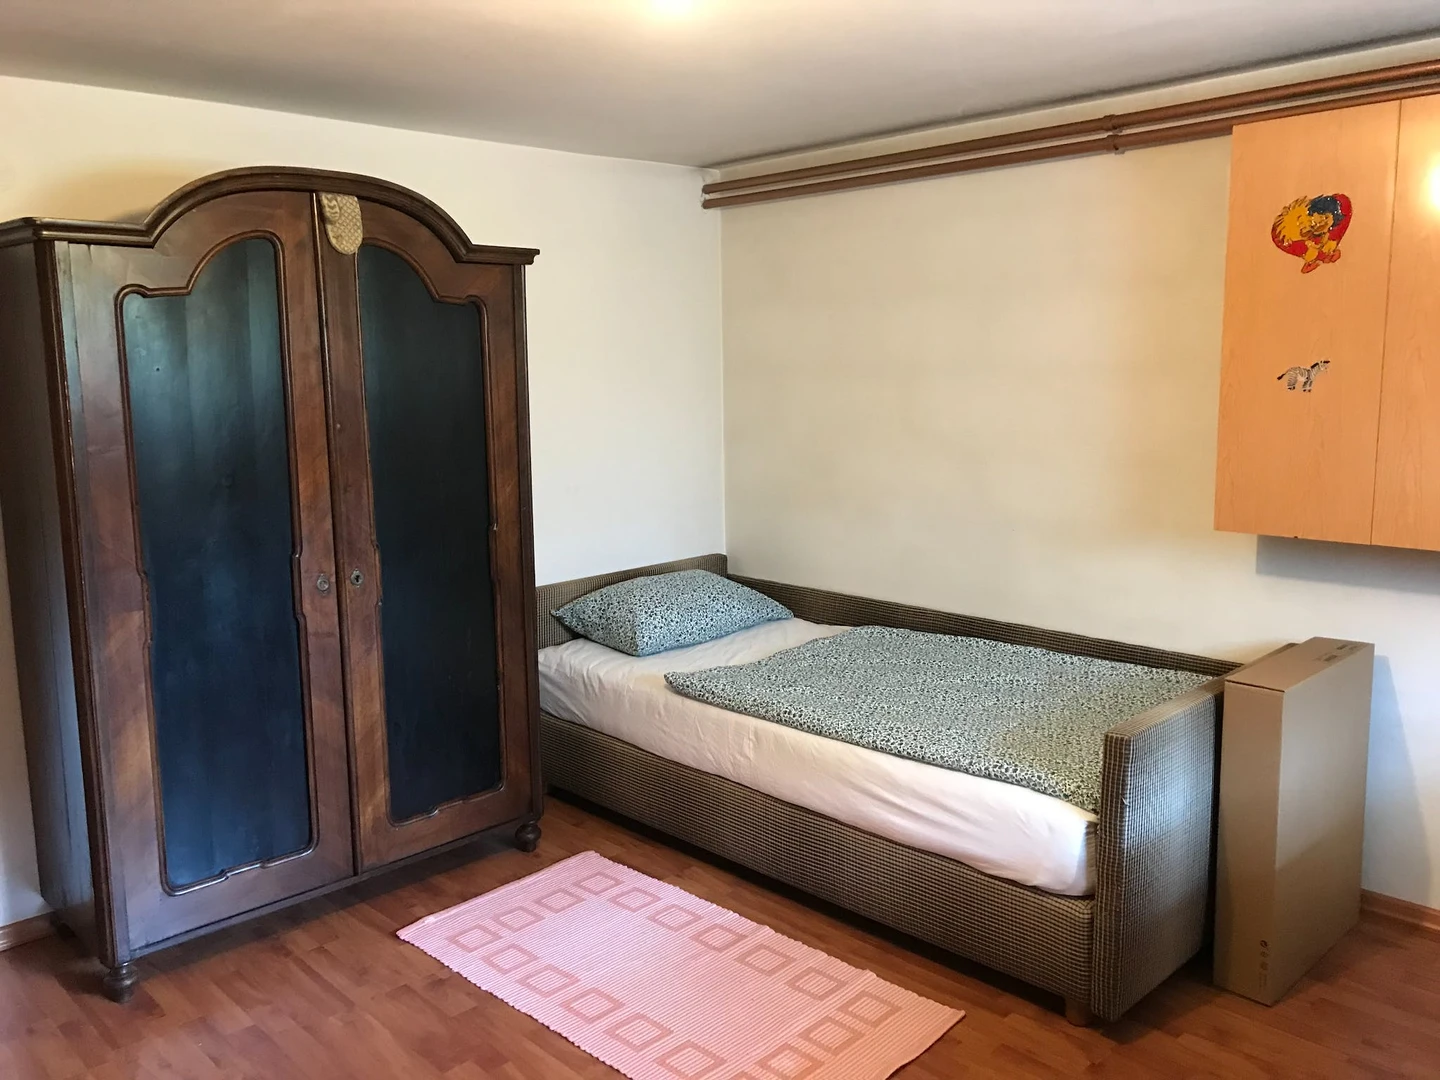 Alquiler de habitaciones por meses en Liubliana